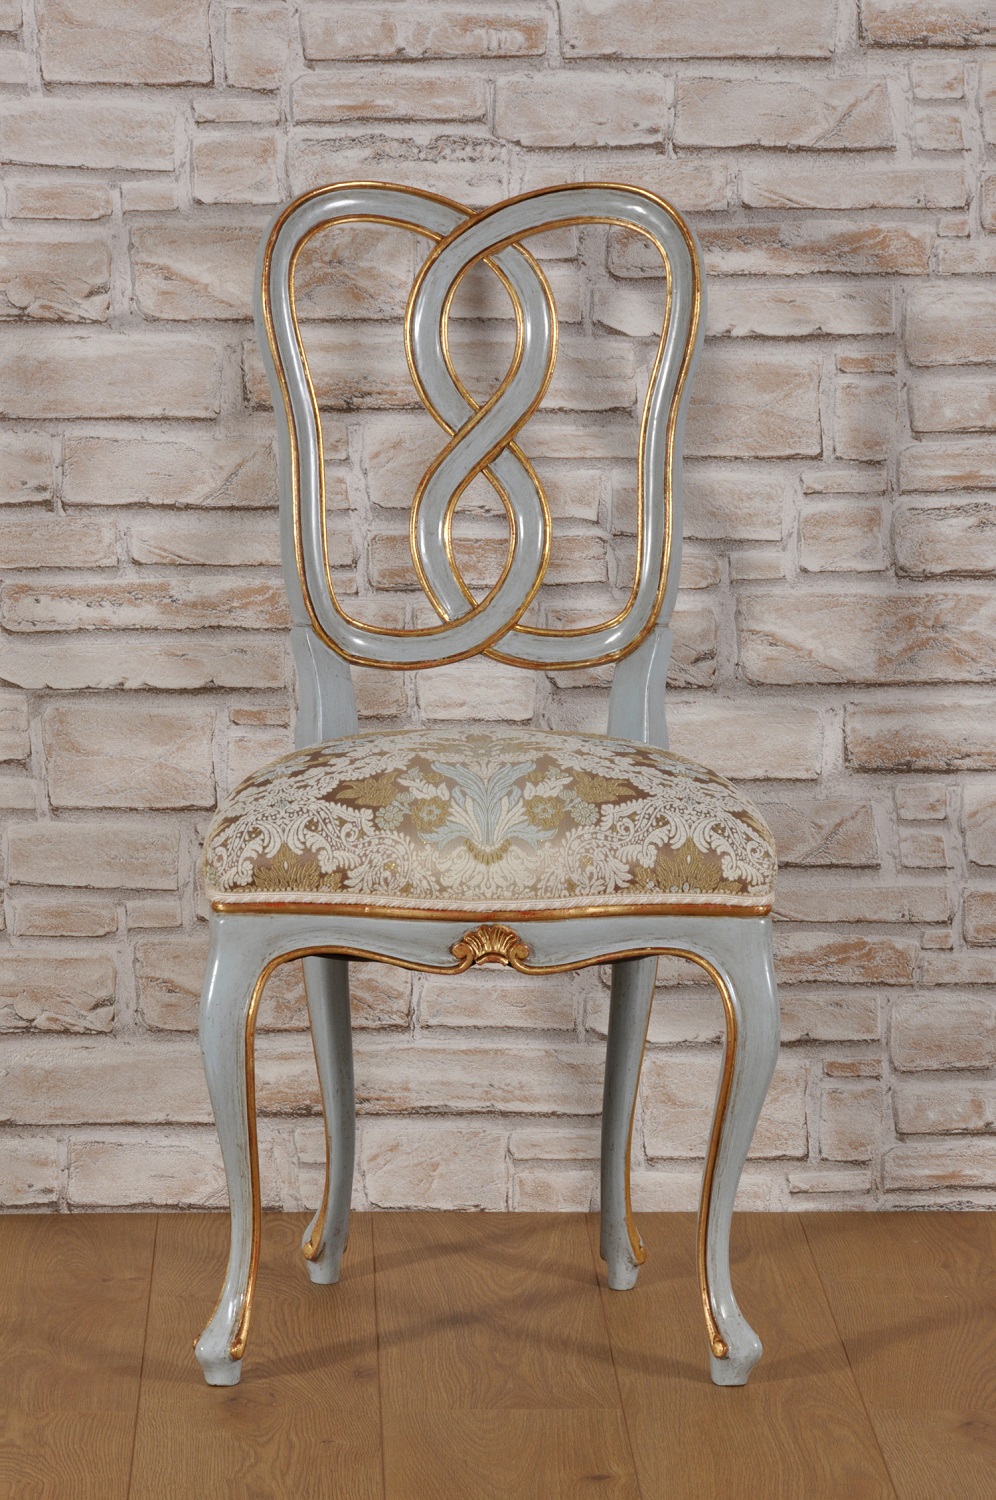 riproduzione sedia di lusso 700 veneziana in stile classico Luigi XV dalle forme mosse e sagomate intagliata e scolpita a mano arredo made in Italy con seduta rivestita e tappezzata laccato foglia oro e azzurro chiaro